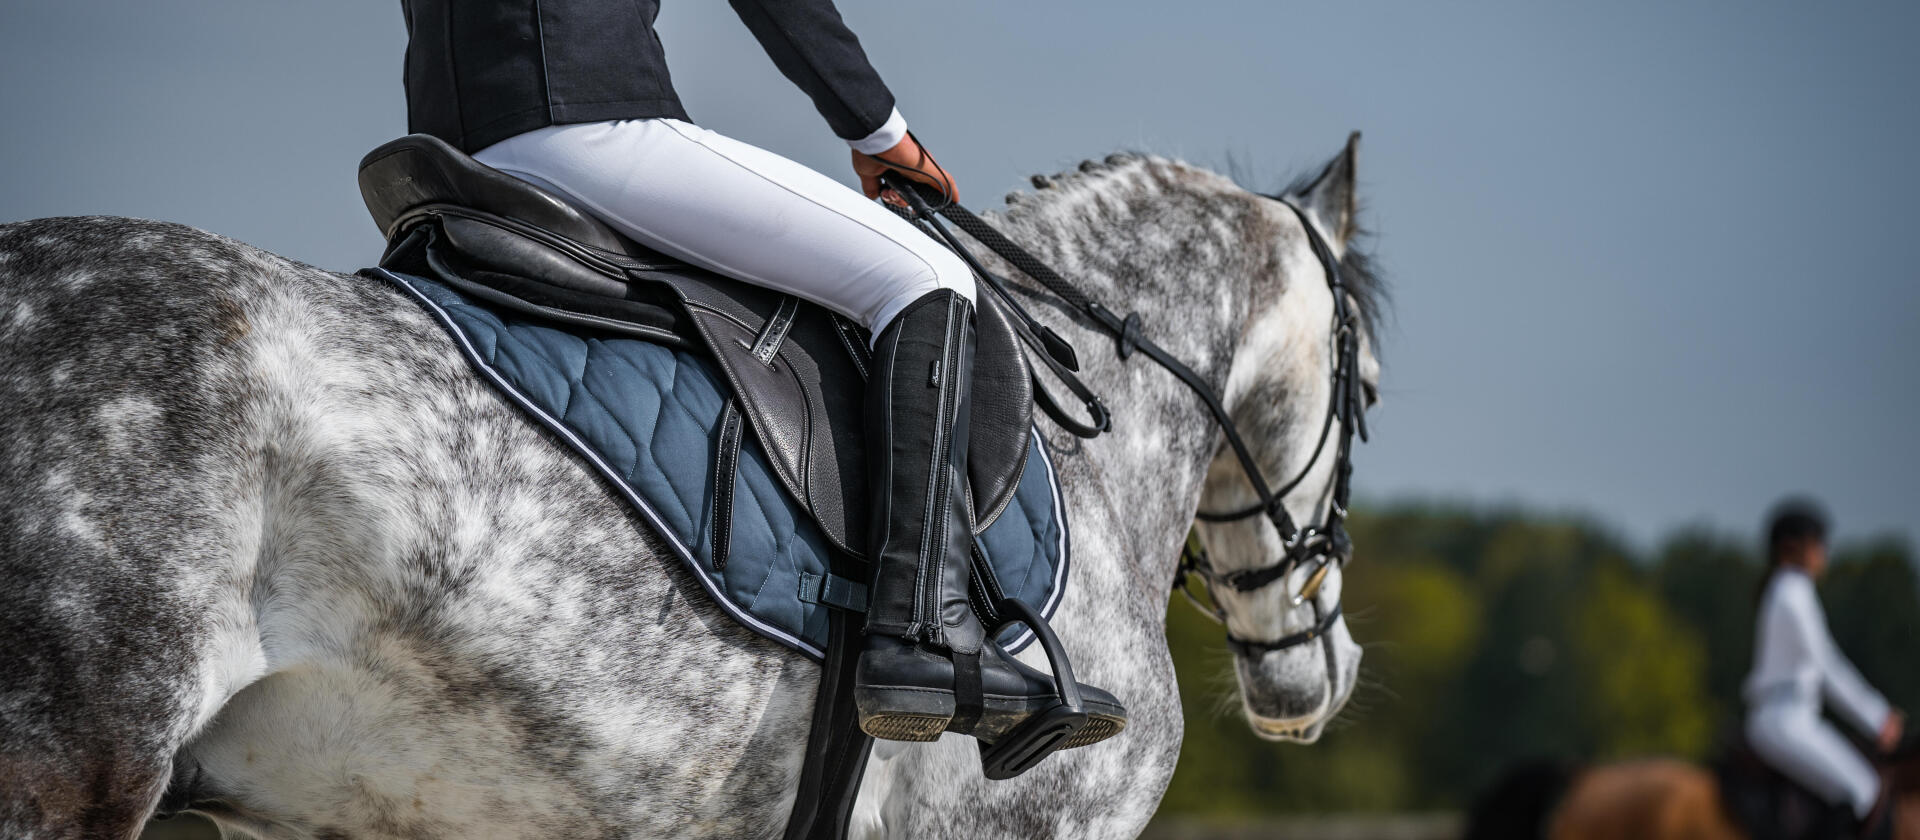 Concours d'équitation : les accessoires indispensables